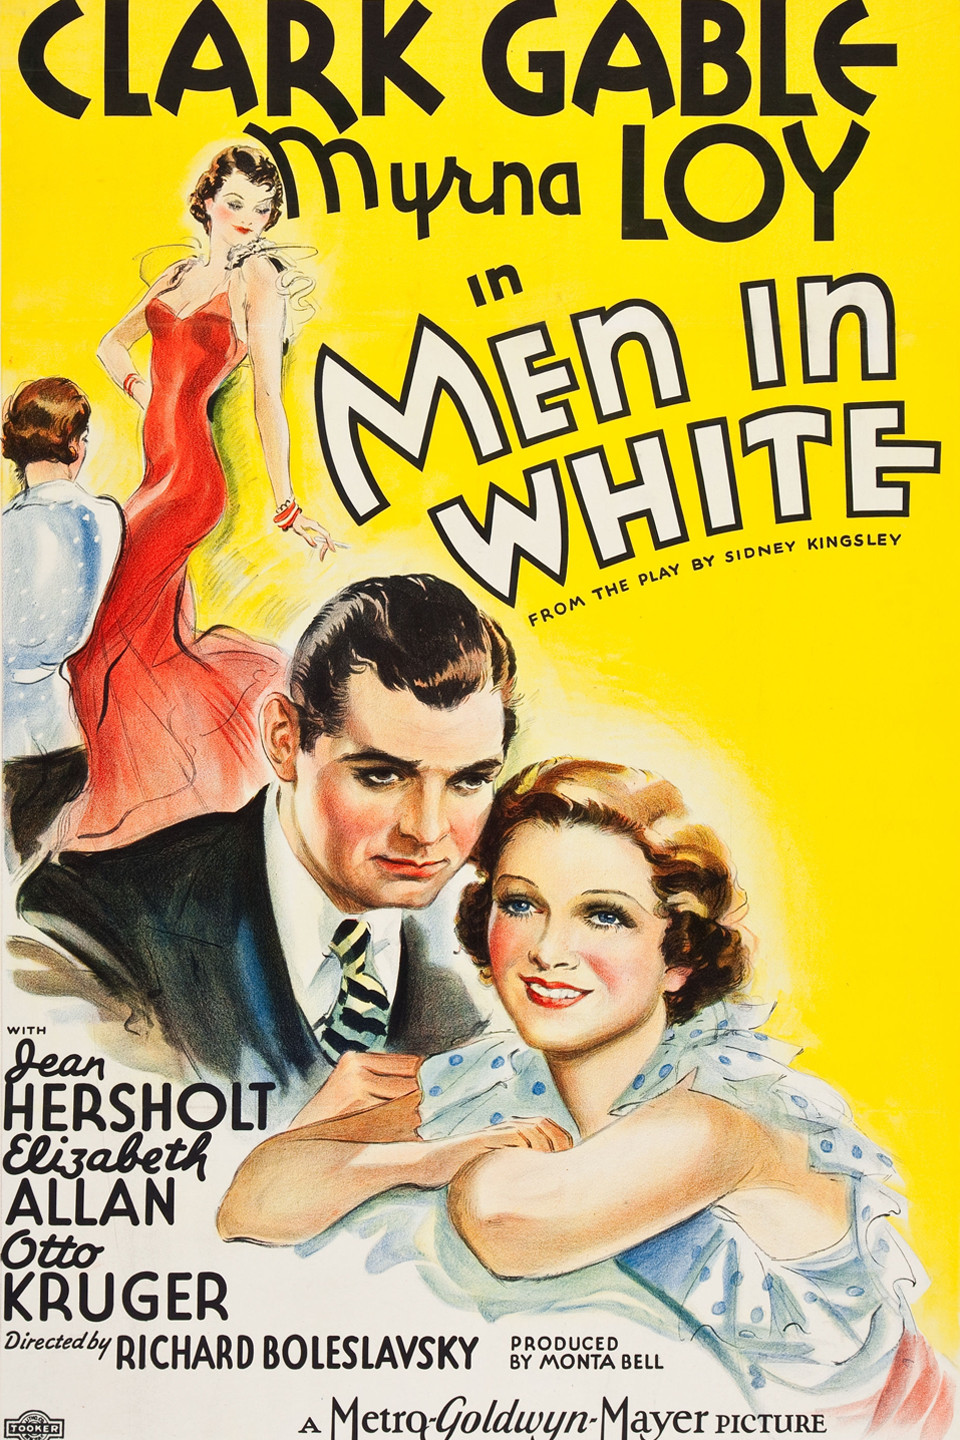 The men in white